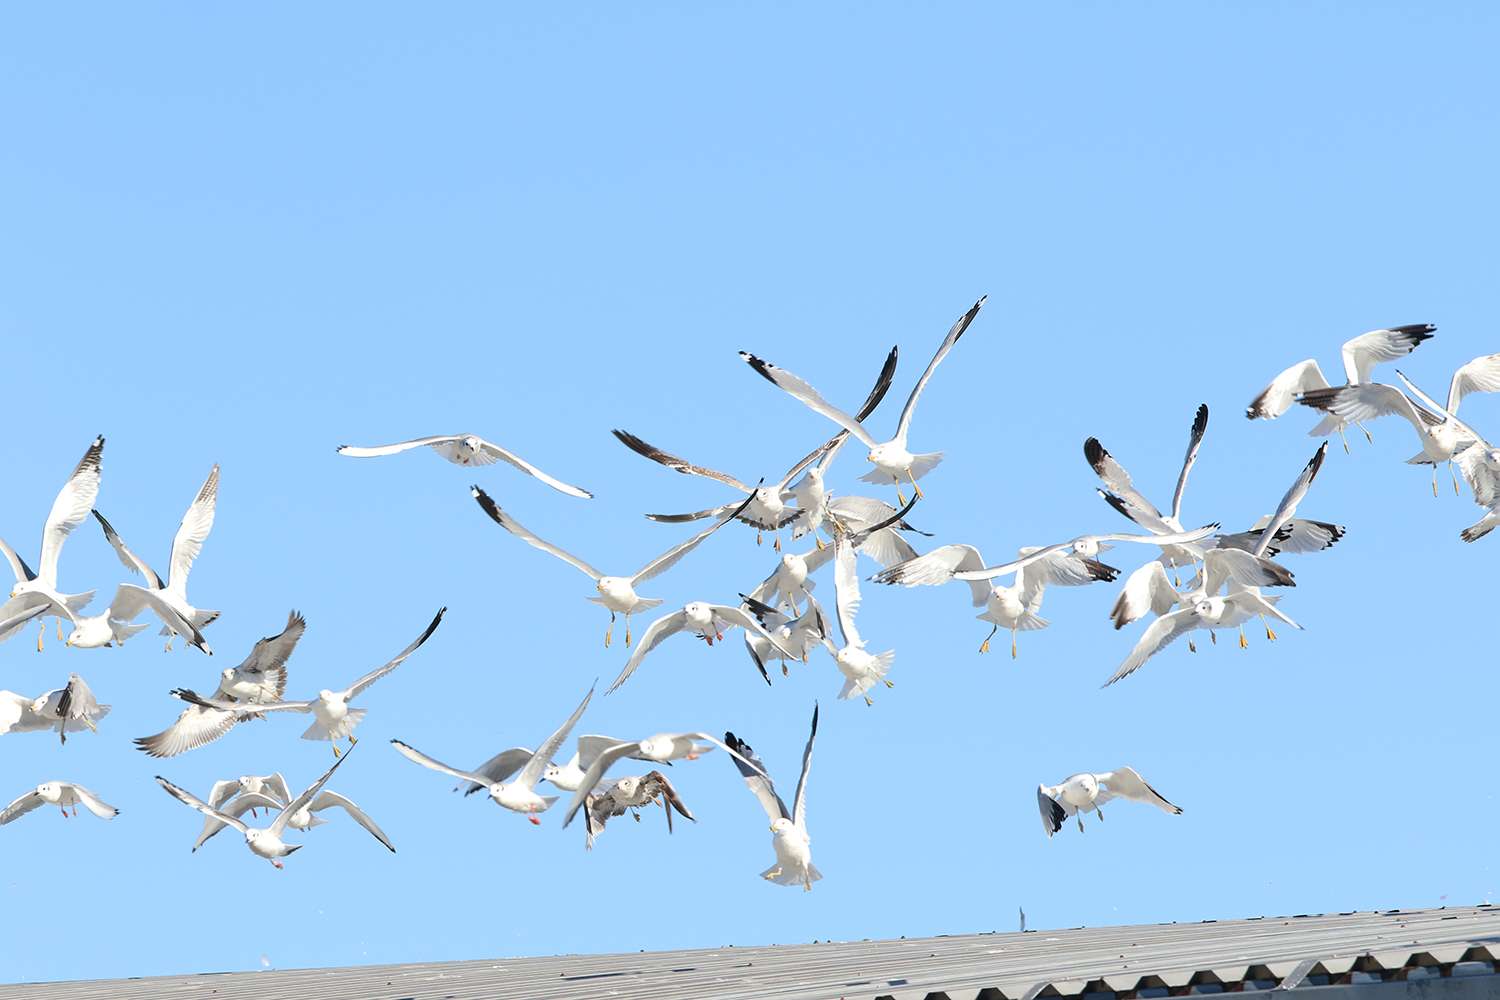 Gulls taking flight.